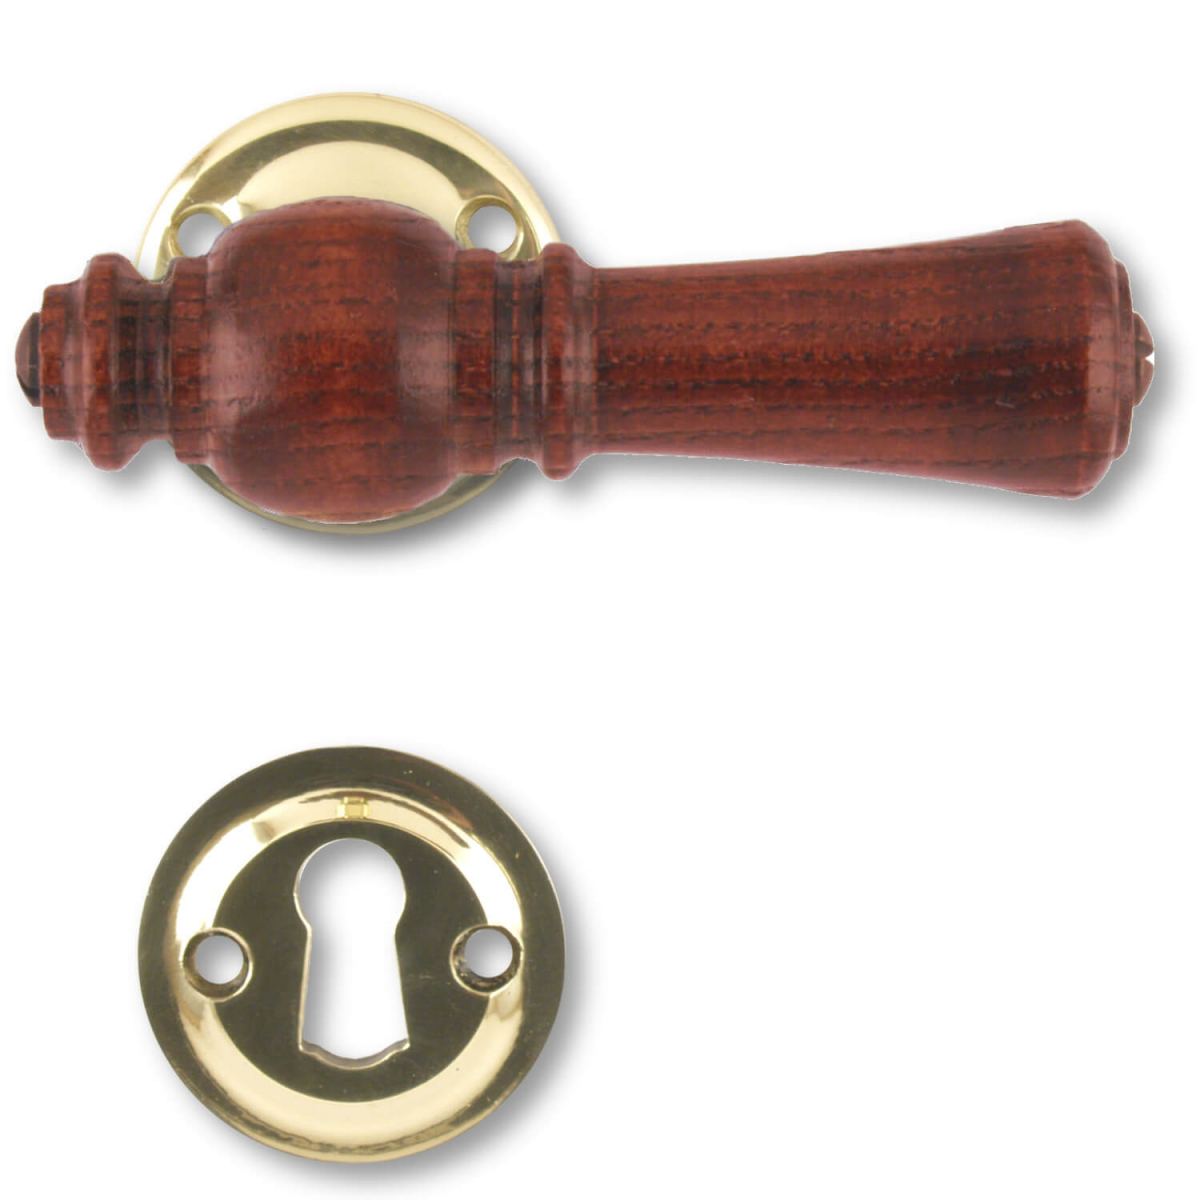 Wooden interior - and rosewood (205201) - Wooden door handle - VillaHus